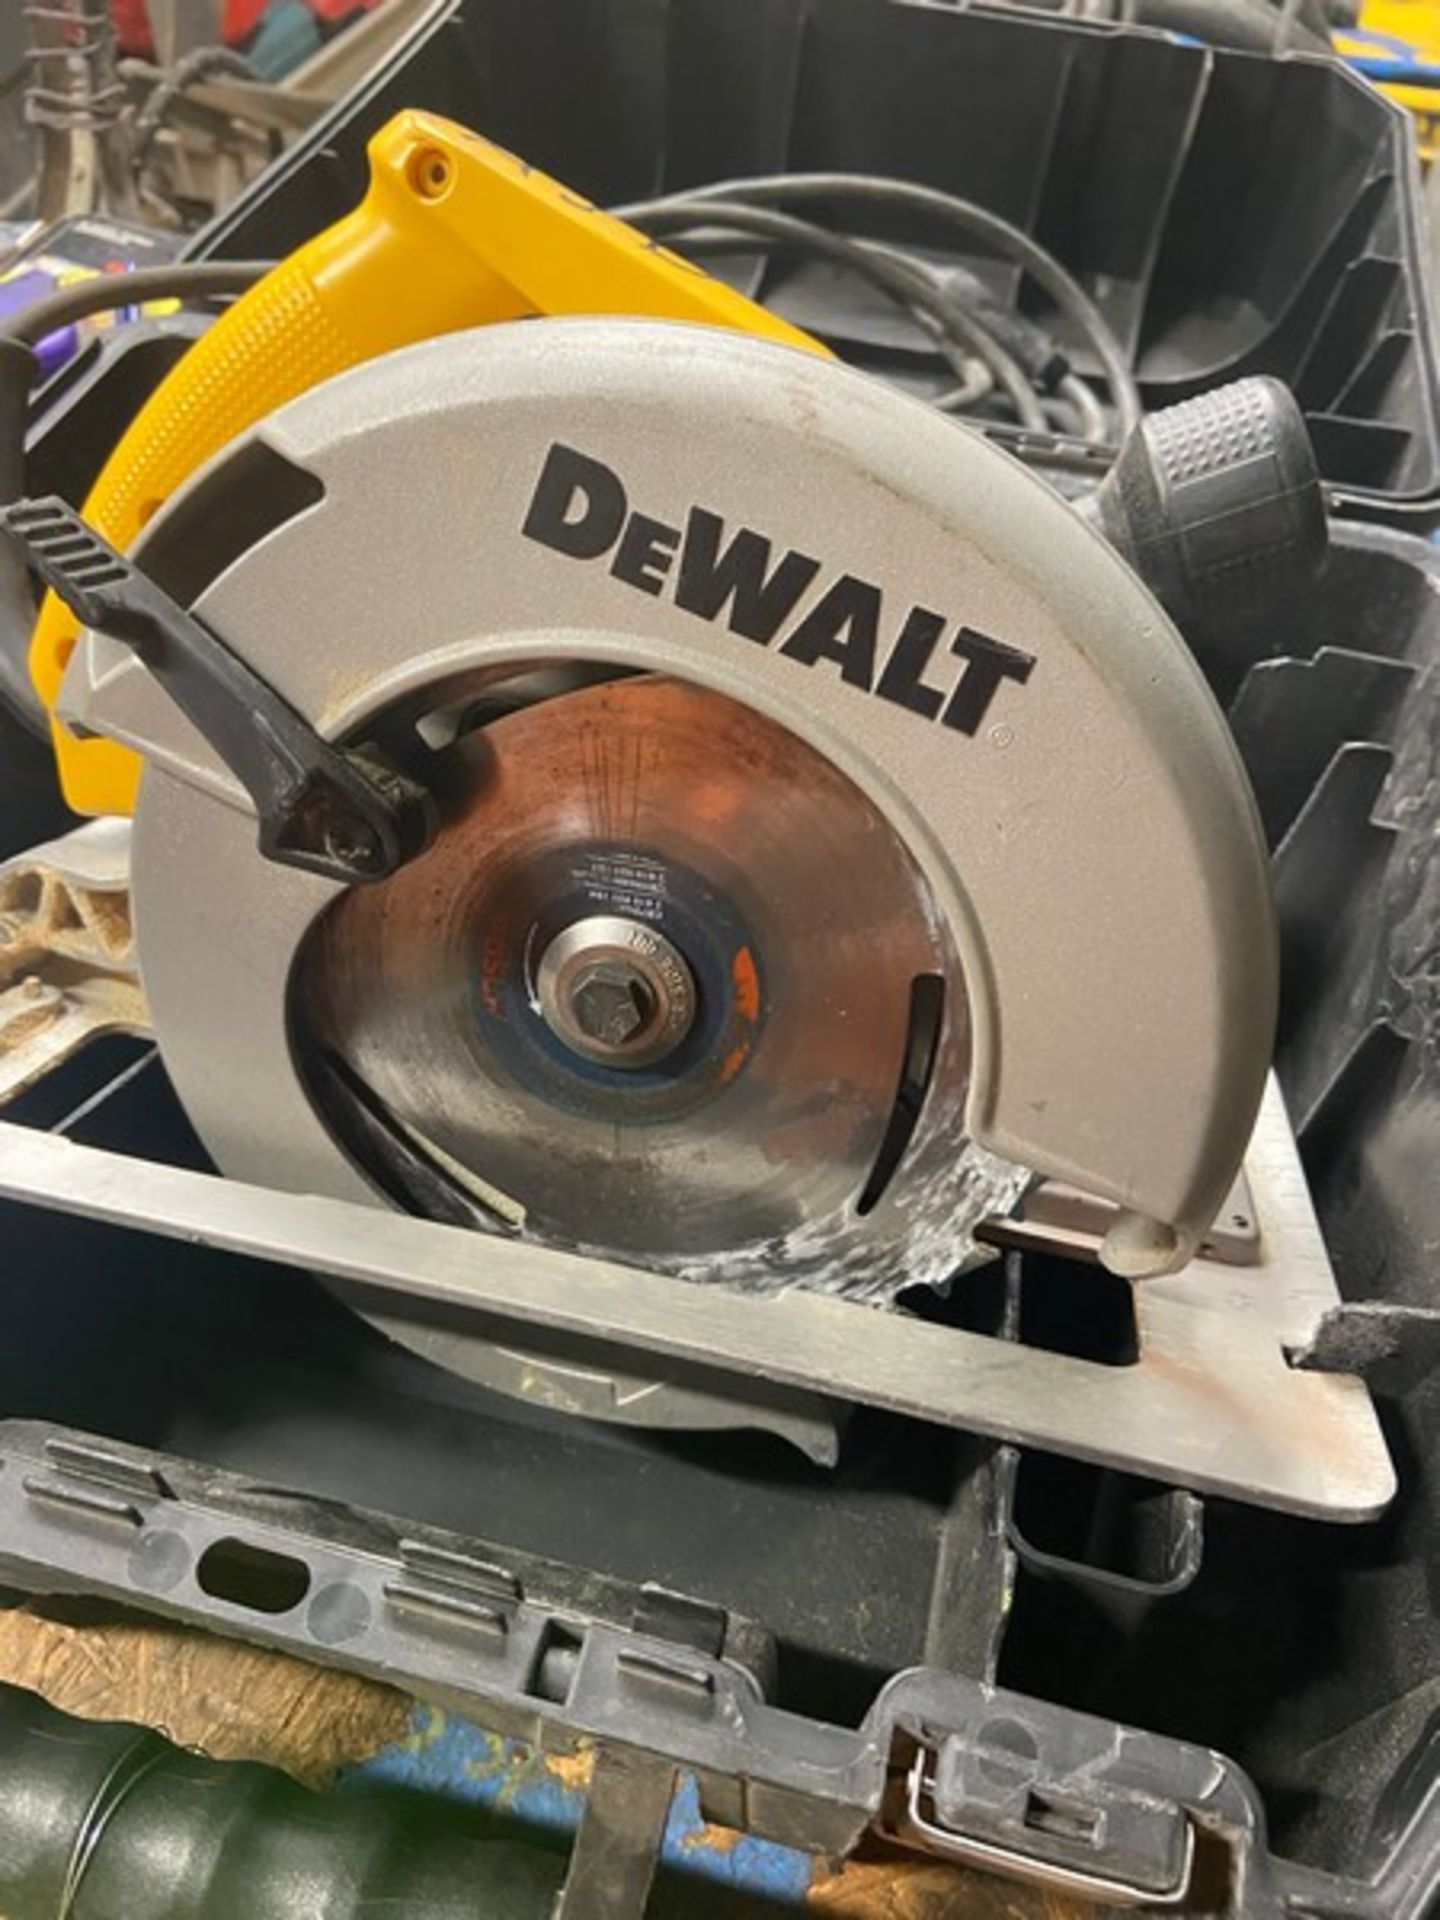 DeWalt 7-1/4” Circular Saw, M/N DW363, with Blade & Hard Case (LOCATED IN MONROEVILLE, PA) - Bild 3 aus 6